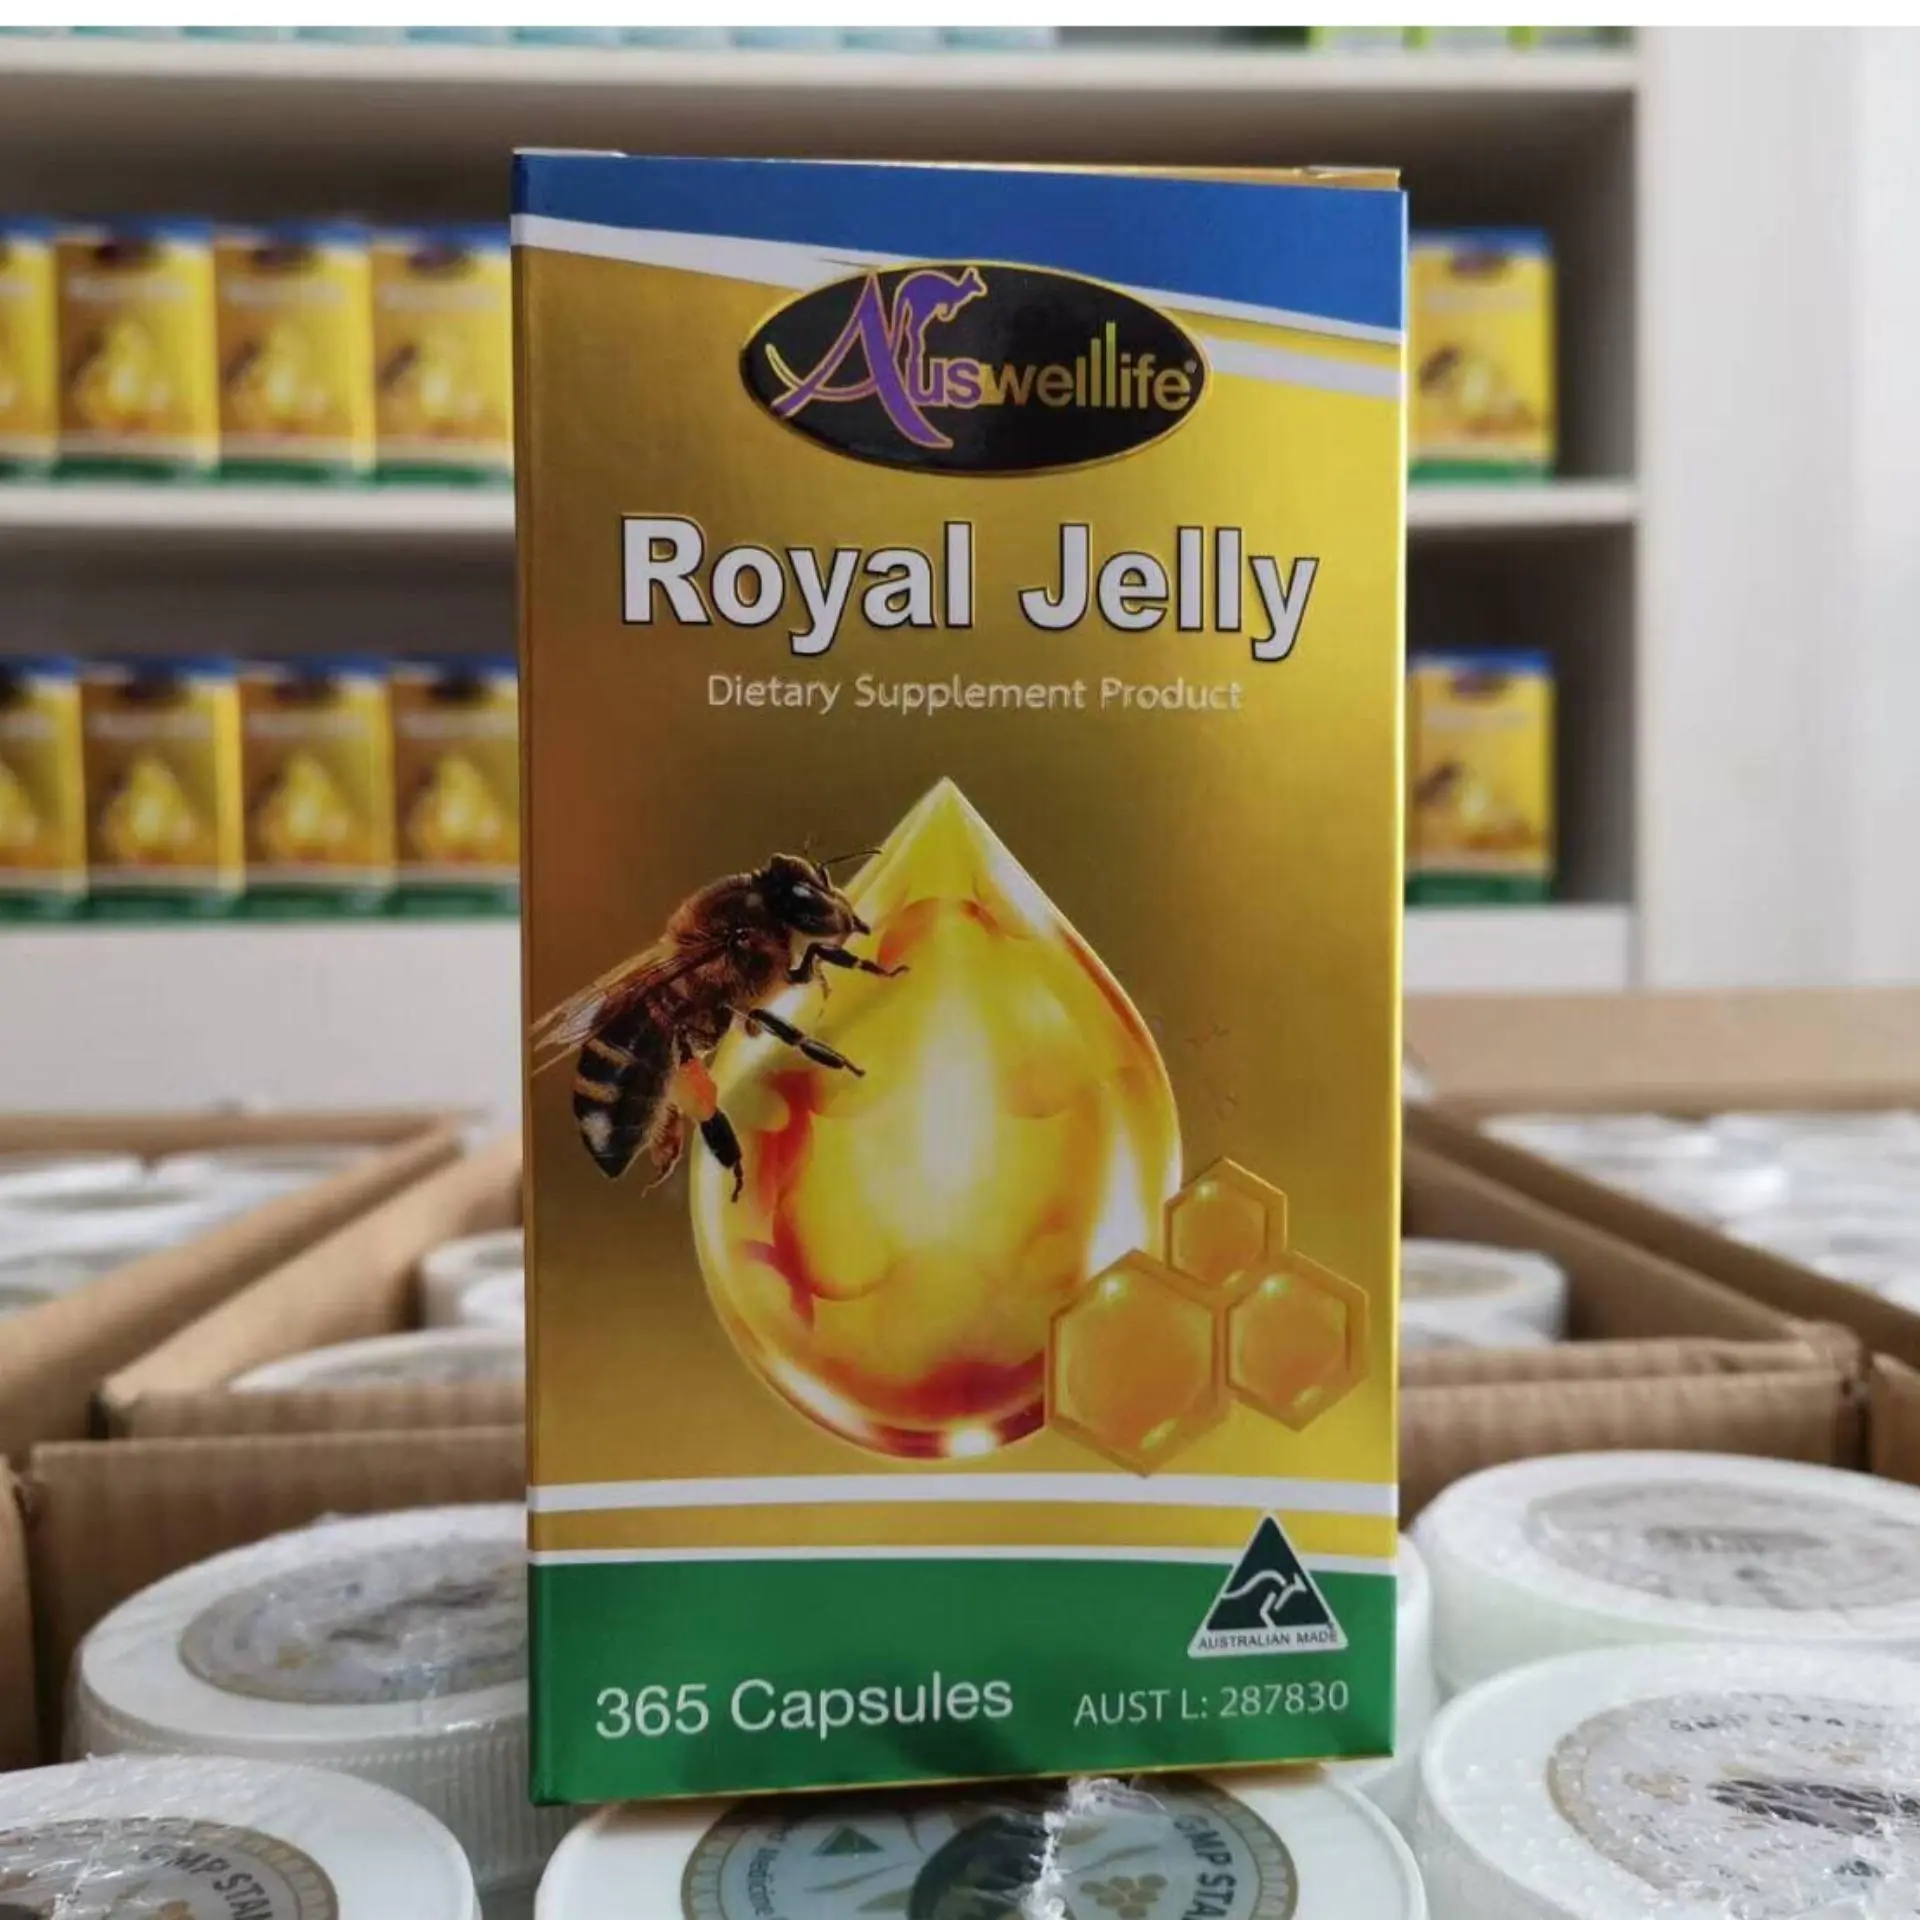 นมผึ้ง ความเข้มข้นสูงสุด Royal Jelly Auswelllife Royal Jelly นมผึ้งเกรดพรีเมี่ยม 100% อาหารเสริมเพื่อสุขภาพ บำรุงประสาทและสมอง ต้านความเครียด นอนไม่หลับ และความอ่อนเยาว์ 1 กระปุก ( 365แคปซูล )